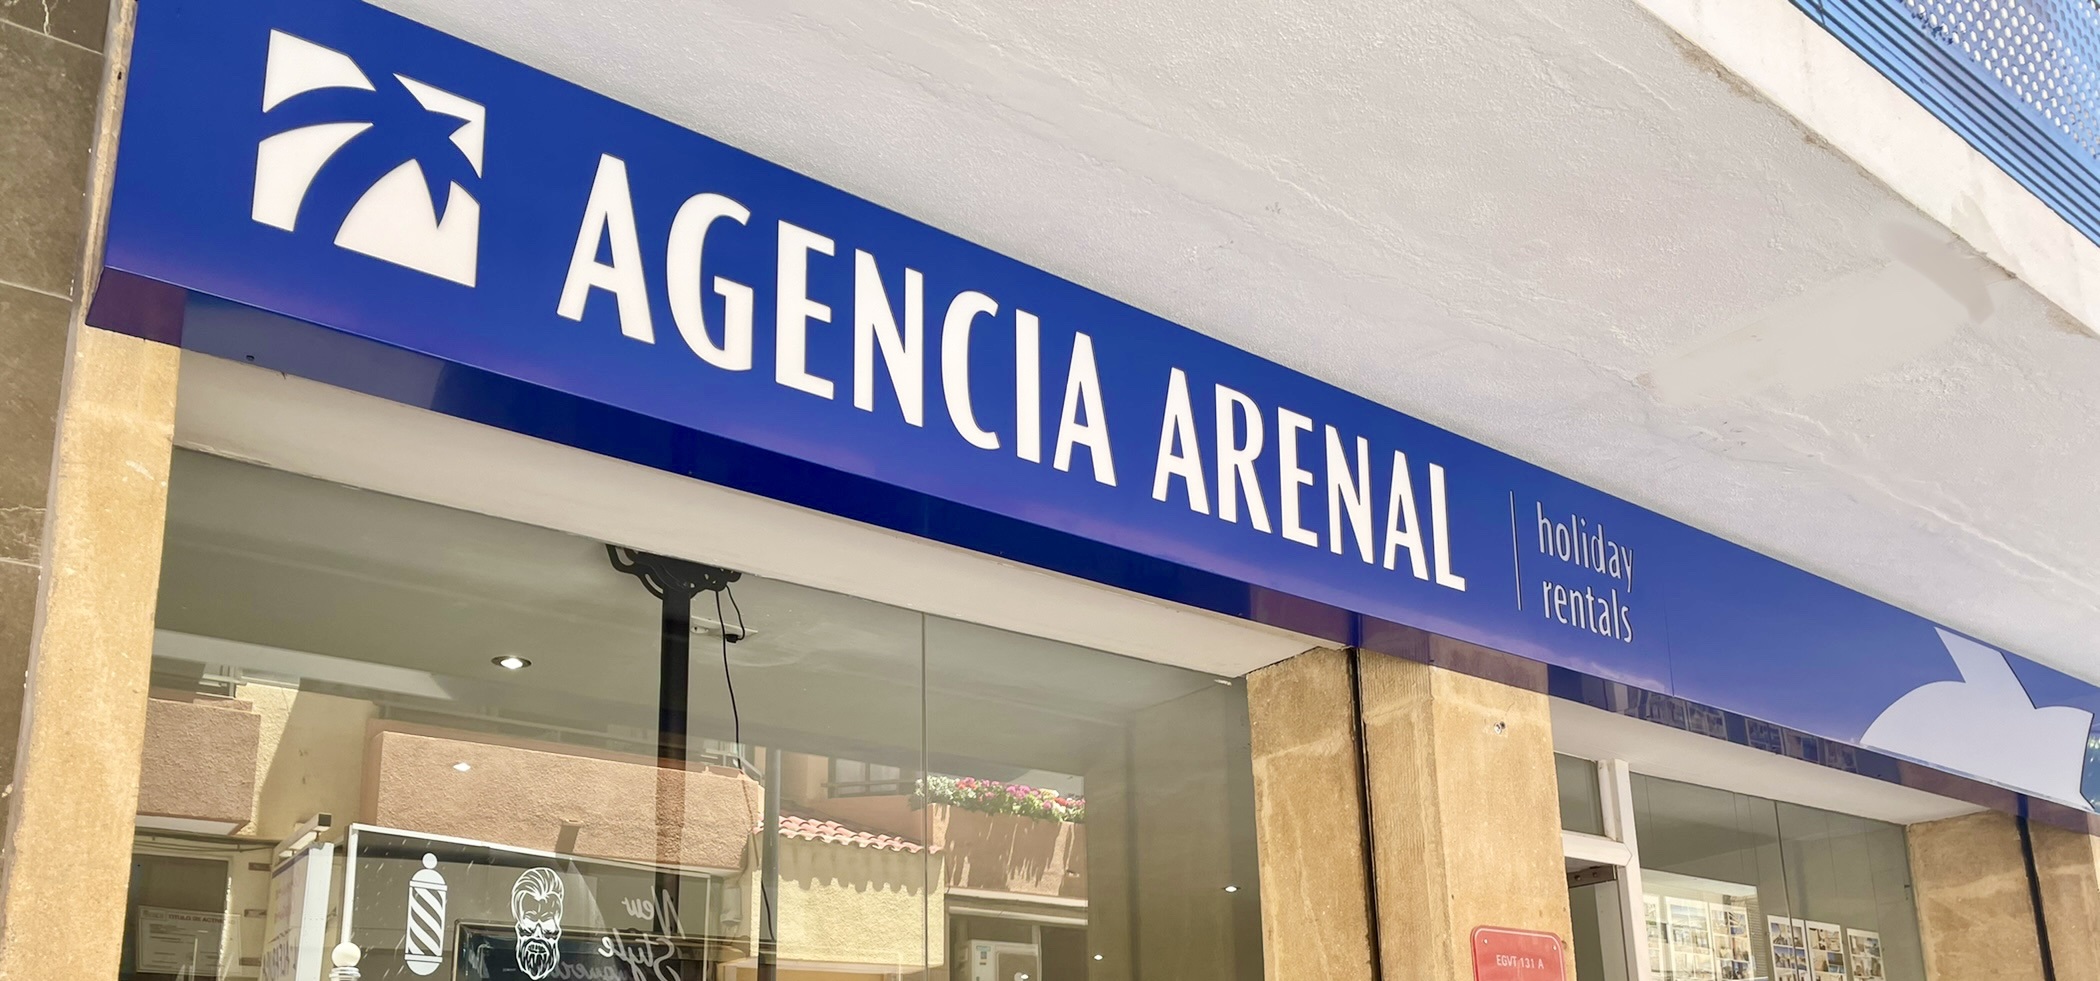 Agencia Arenal en Calpe